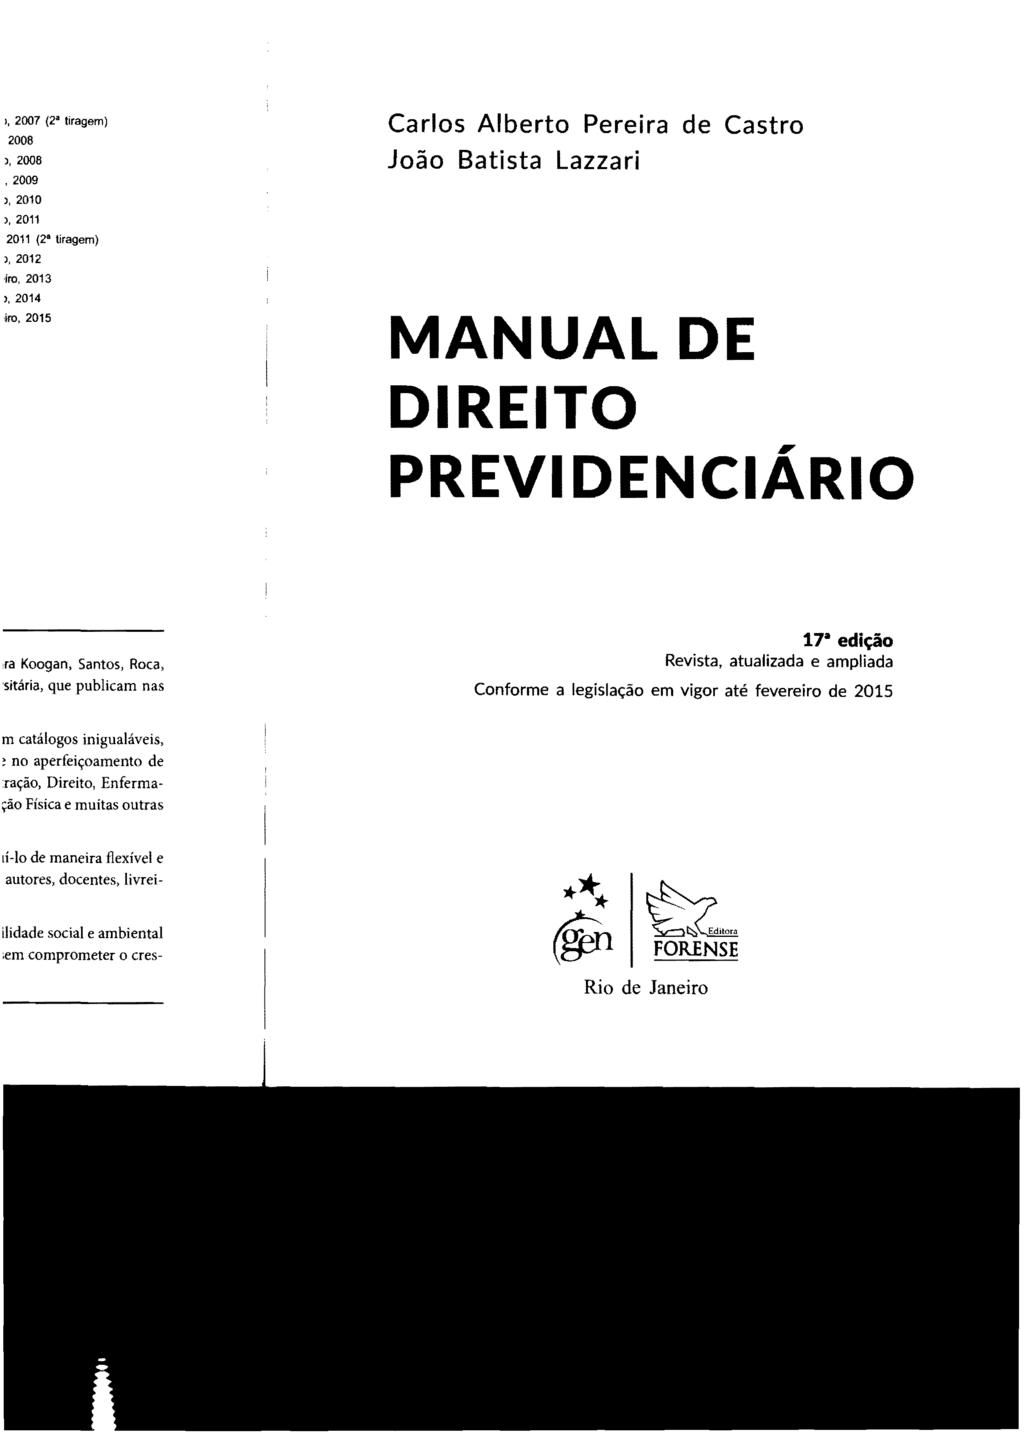 Carlos Alberto Pereira de Castro João Batista Lazzari MANUAL DE DIREITO PREVIDENCIÁRIO 17- edição